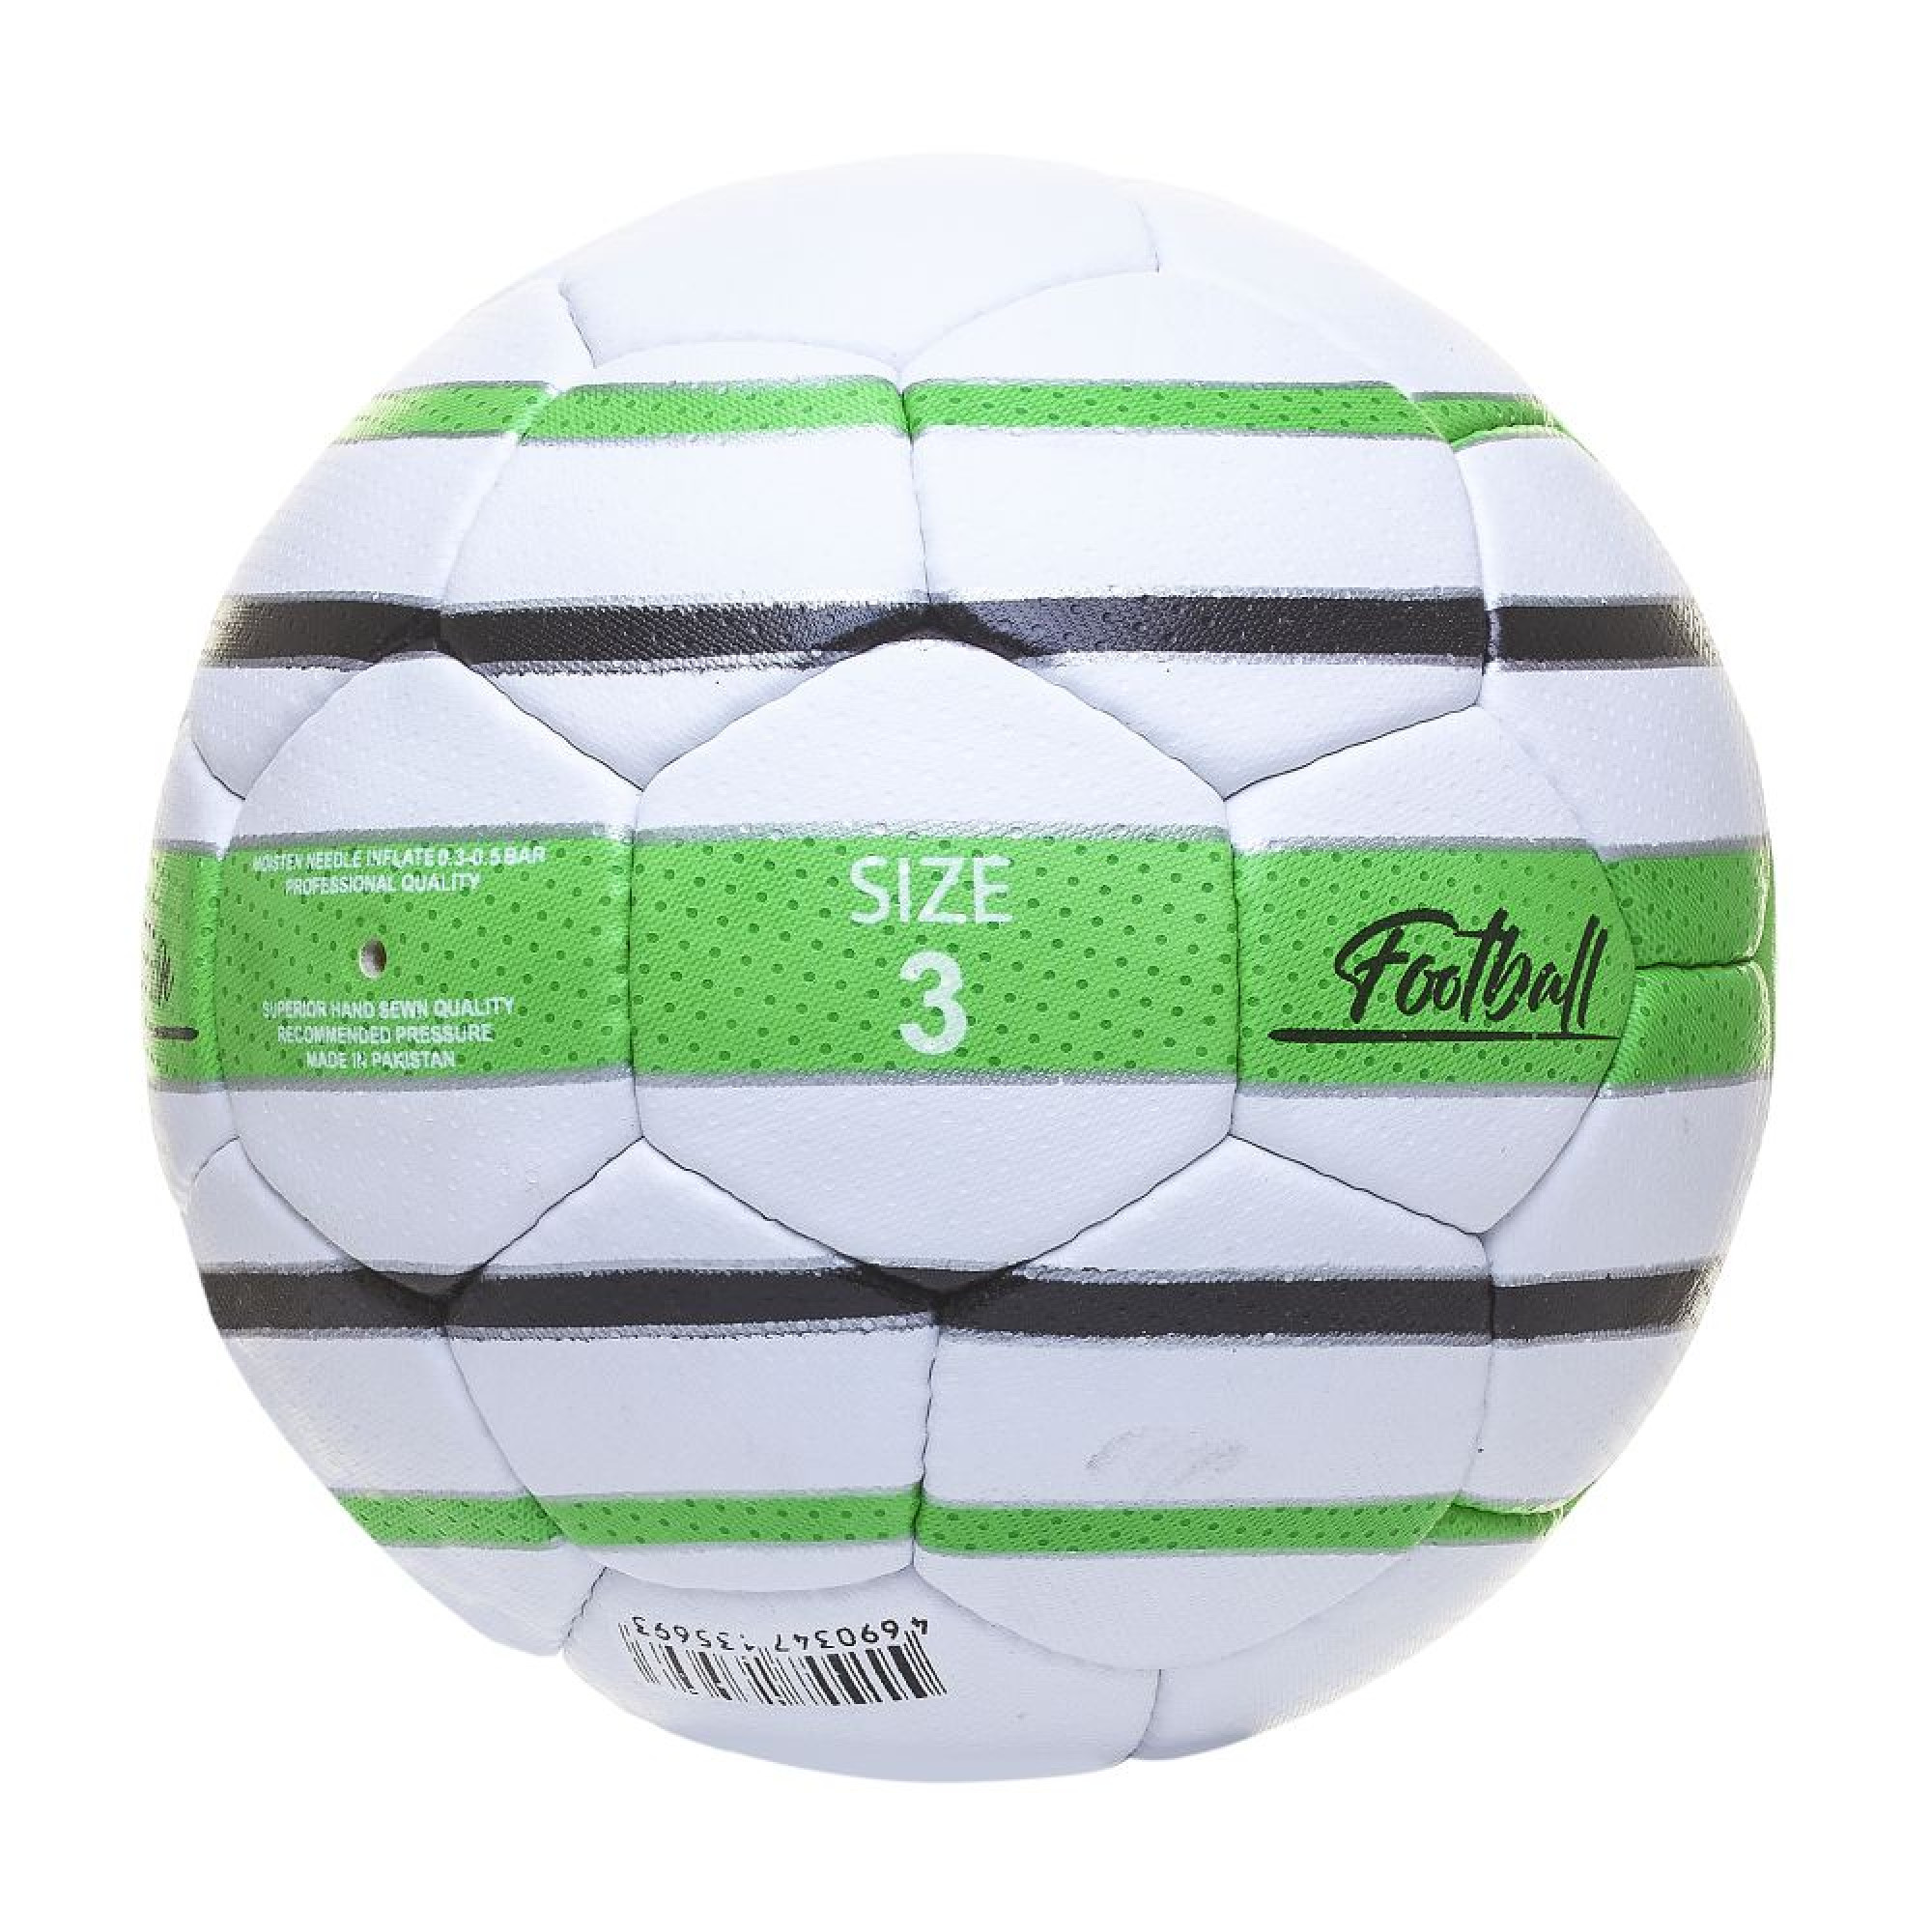 Мяч футбольный ATEMI REACTION, PU, 1.4мм, белый/зеленый/черный, р.3